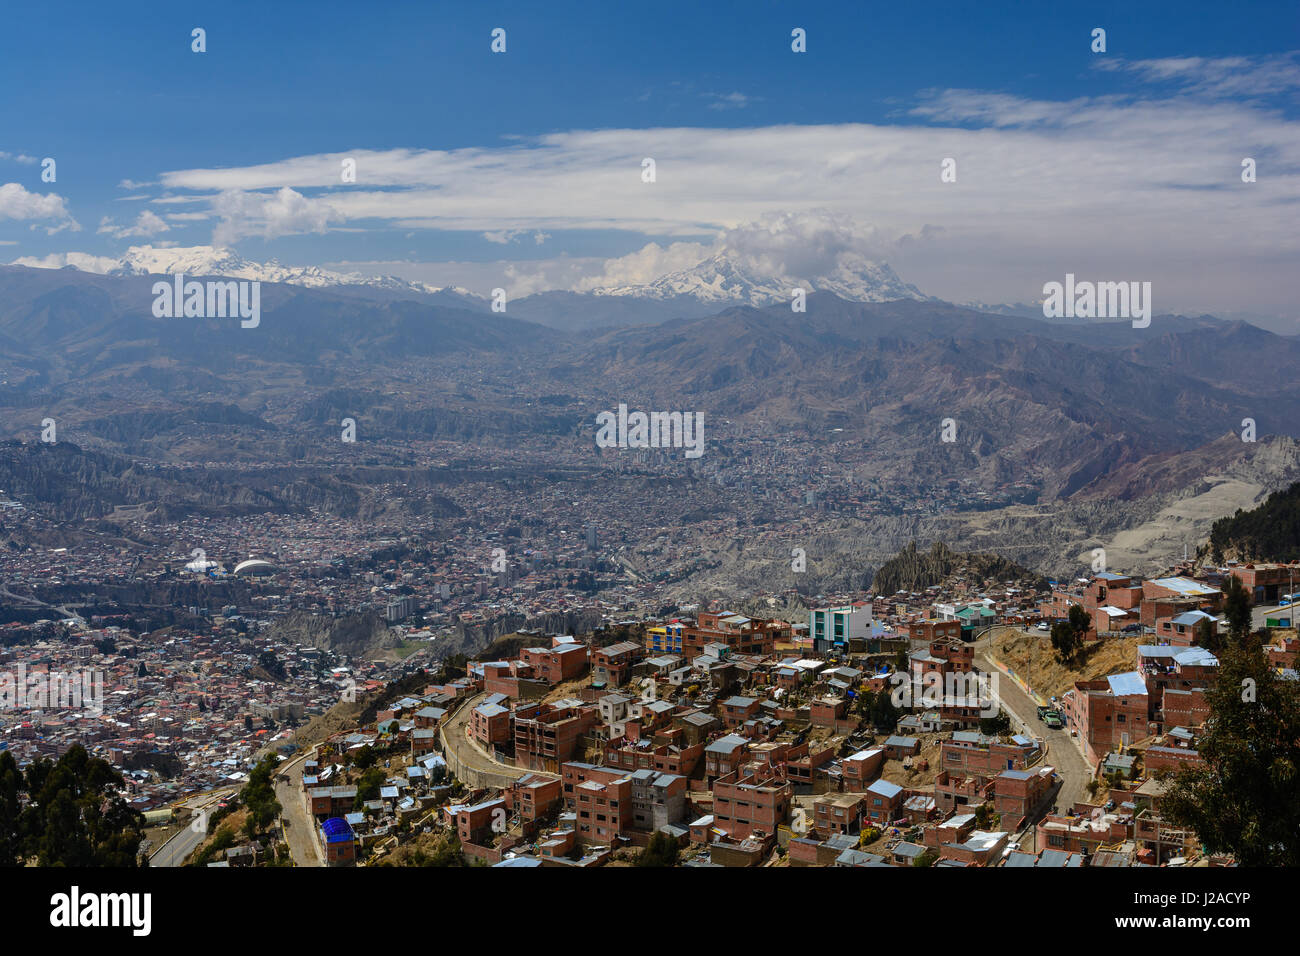 Bolivia, Departamento de La Paz El Alto, il povero città", che si trova ad una altitudine di 4100 m sull'Altiplano sopra la caldaia di La Paz Foto Stock